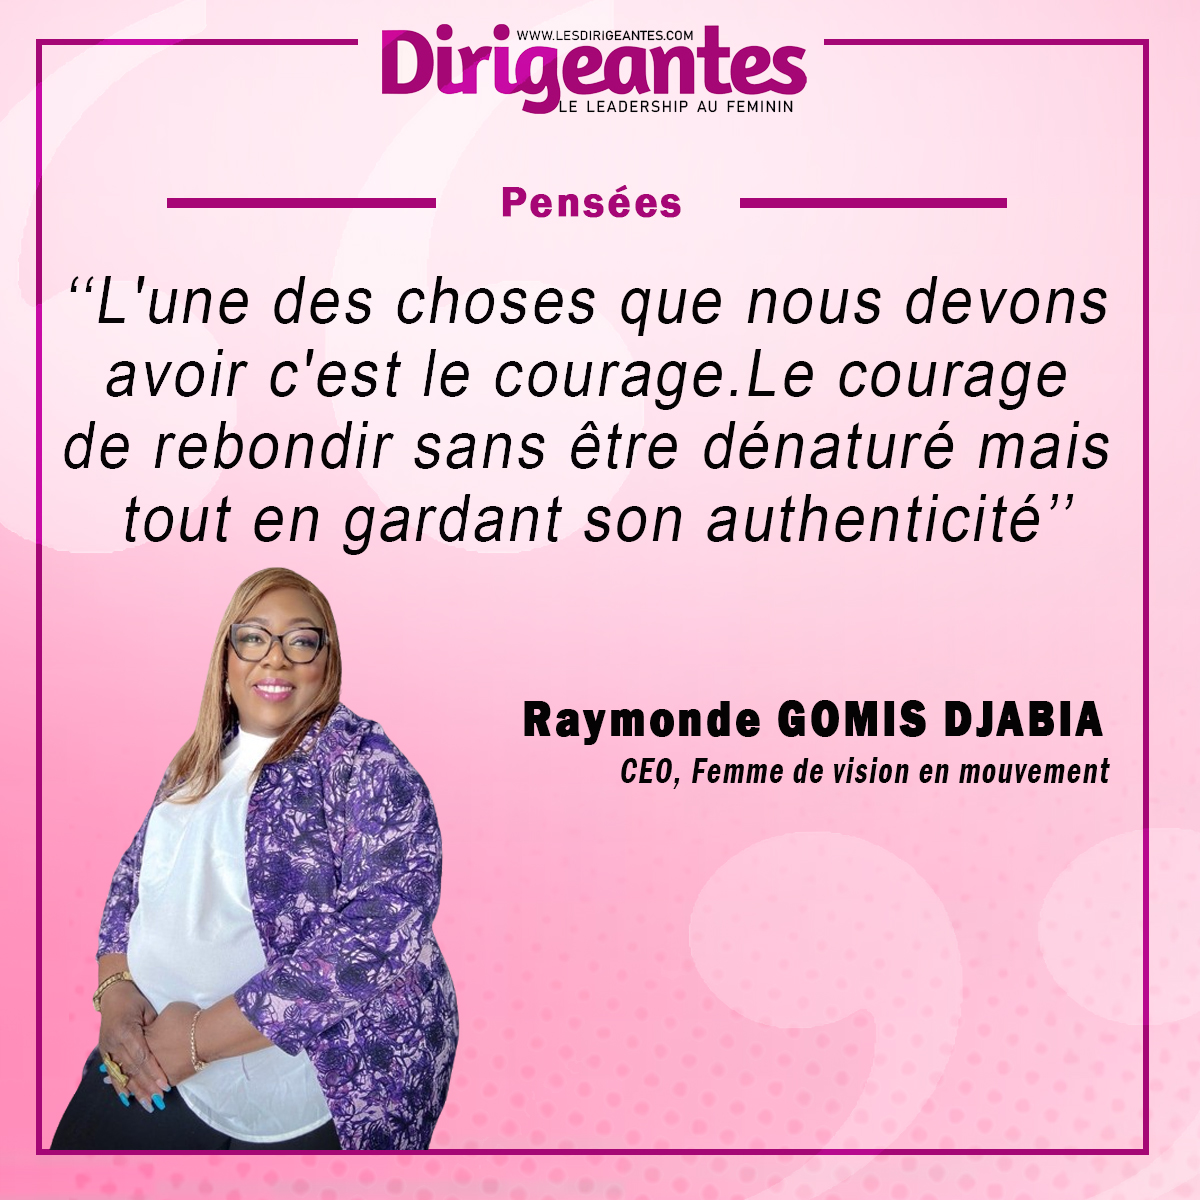 Raymonde GOMIS DJABIA, CEO, Femme de vision en mouvement